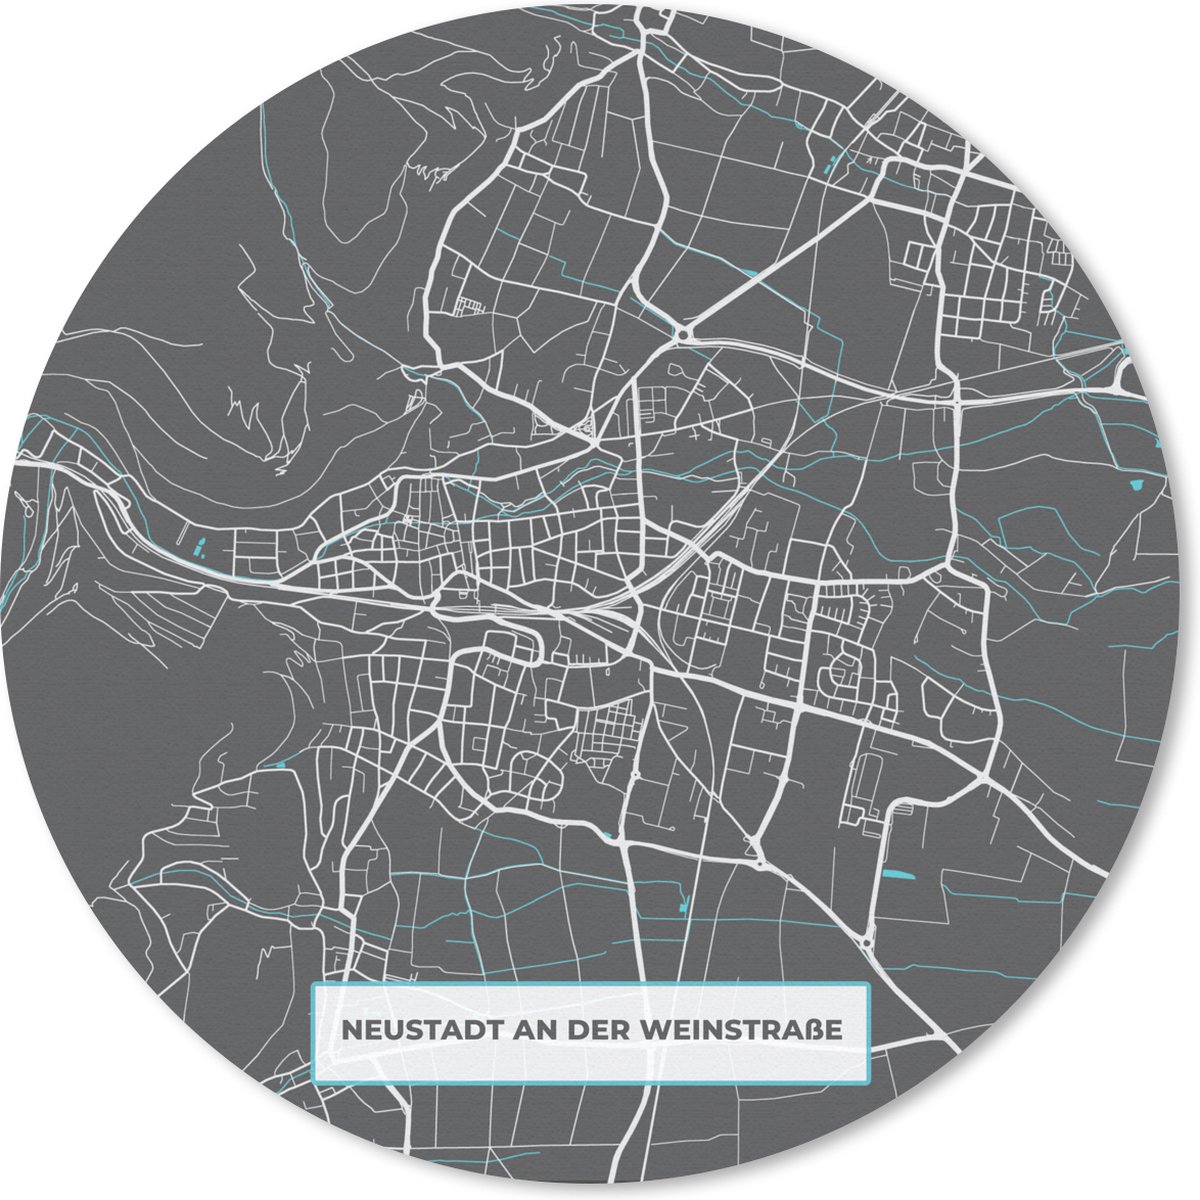 Muismat - Mousepad - Rond - Kaart – Plattegrond – Stadskaart – Neustadt an der Weinstraße – Duitsland – Blauw - 20x20 cm - Ronde muismat